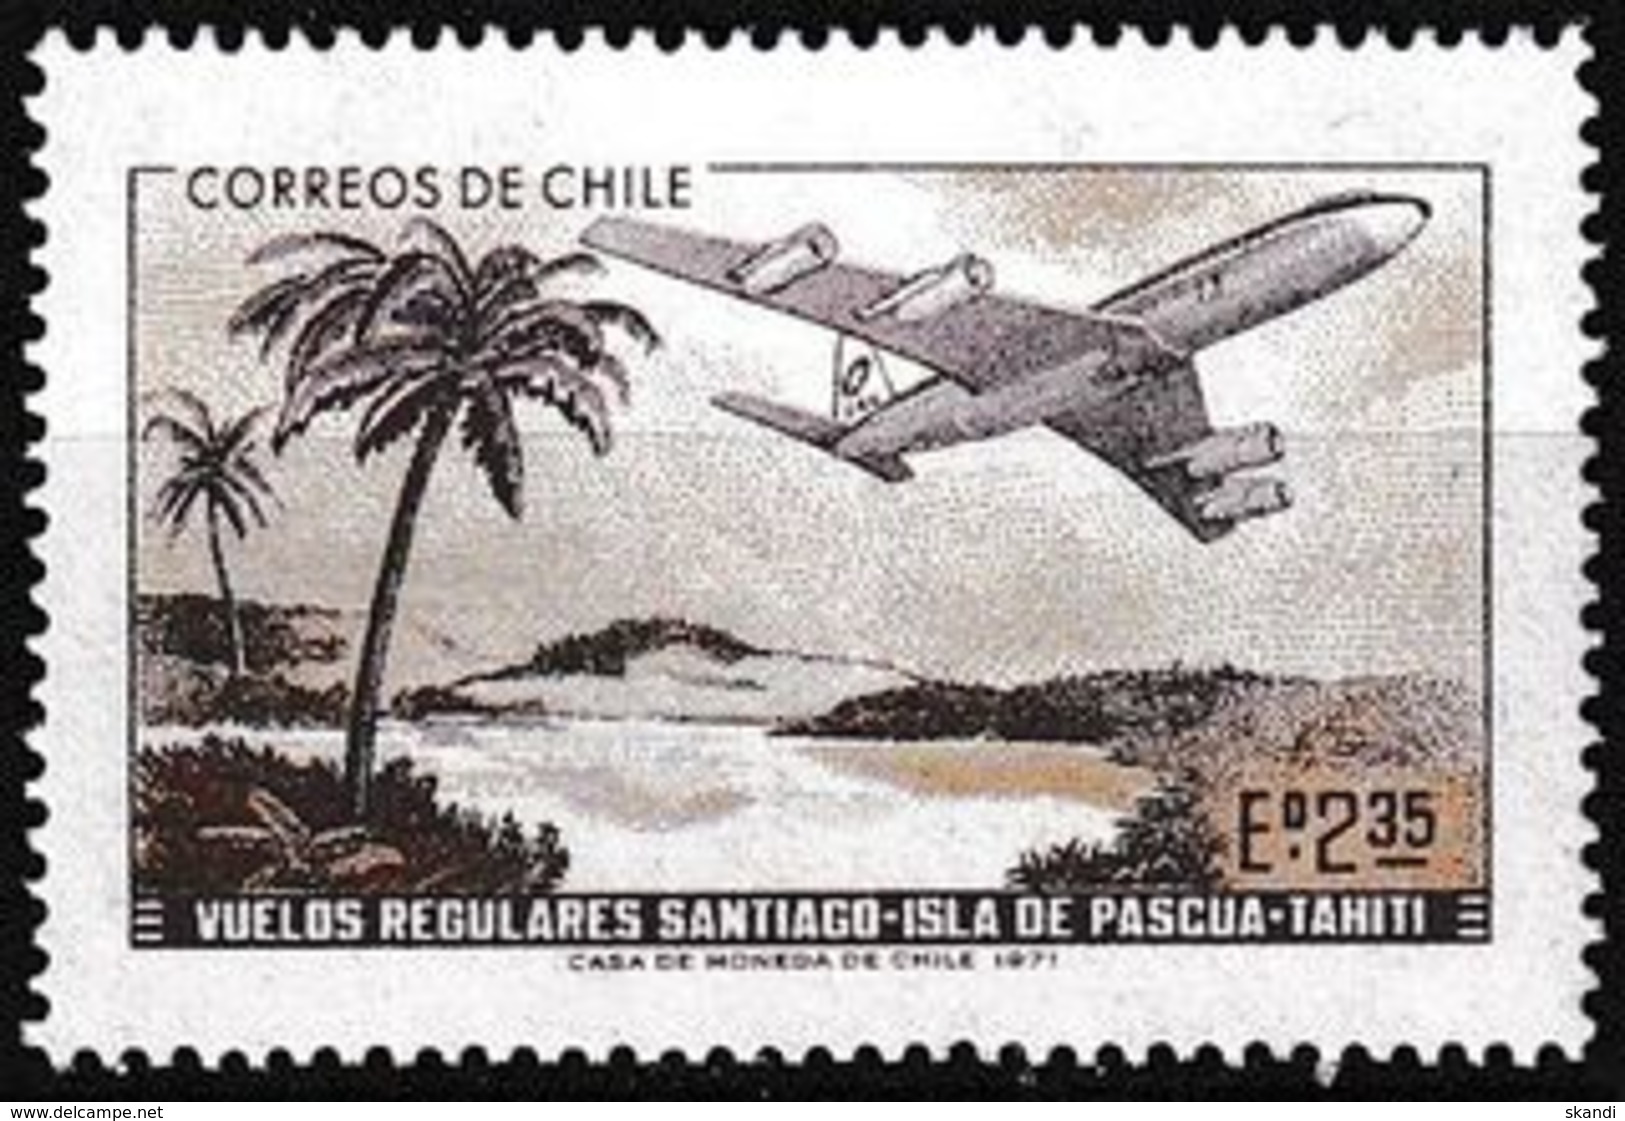 CHILE 1971 Mi-Nr. 766 ** MNH - Chili